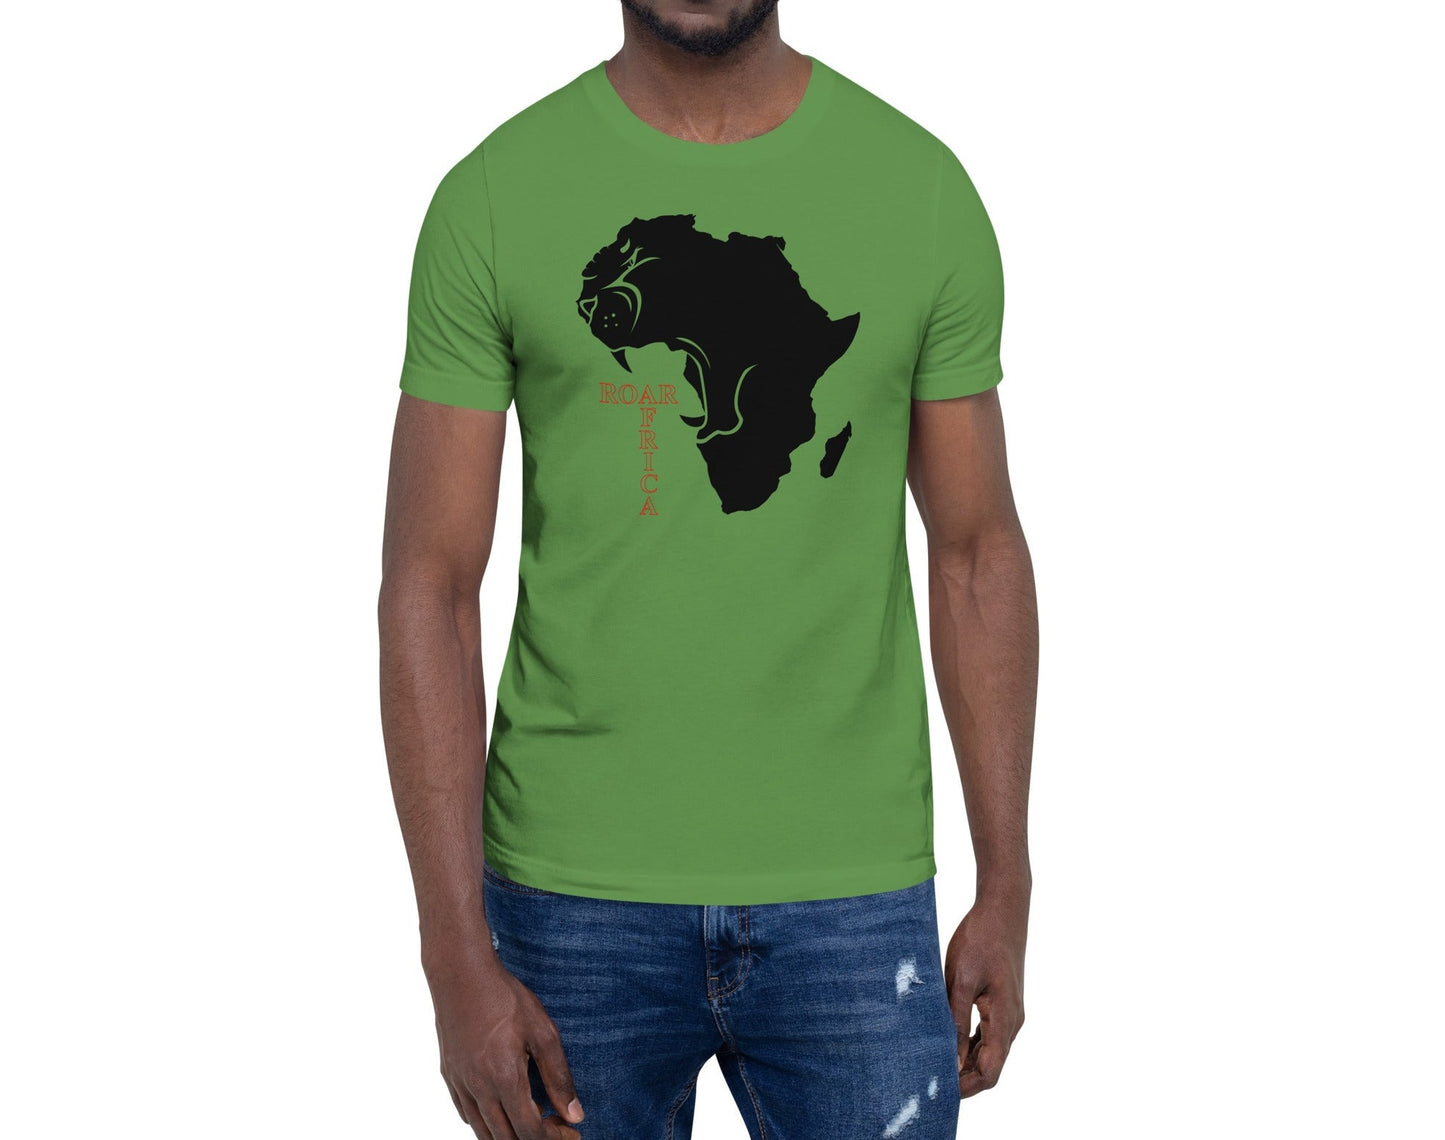 Roar Africa Shirt, Roaring African Lion inside Africa Map T-Shirt | Unisex - bukulu